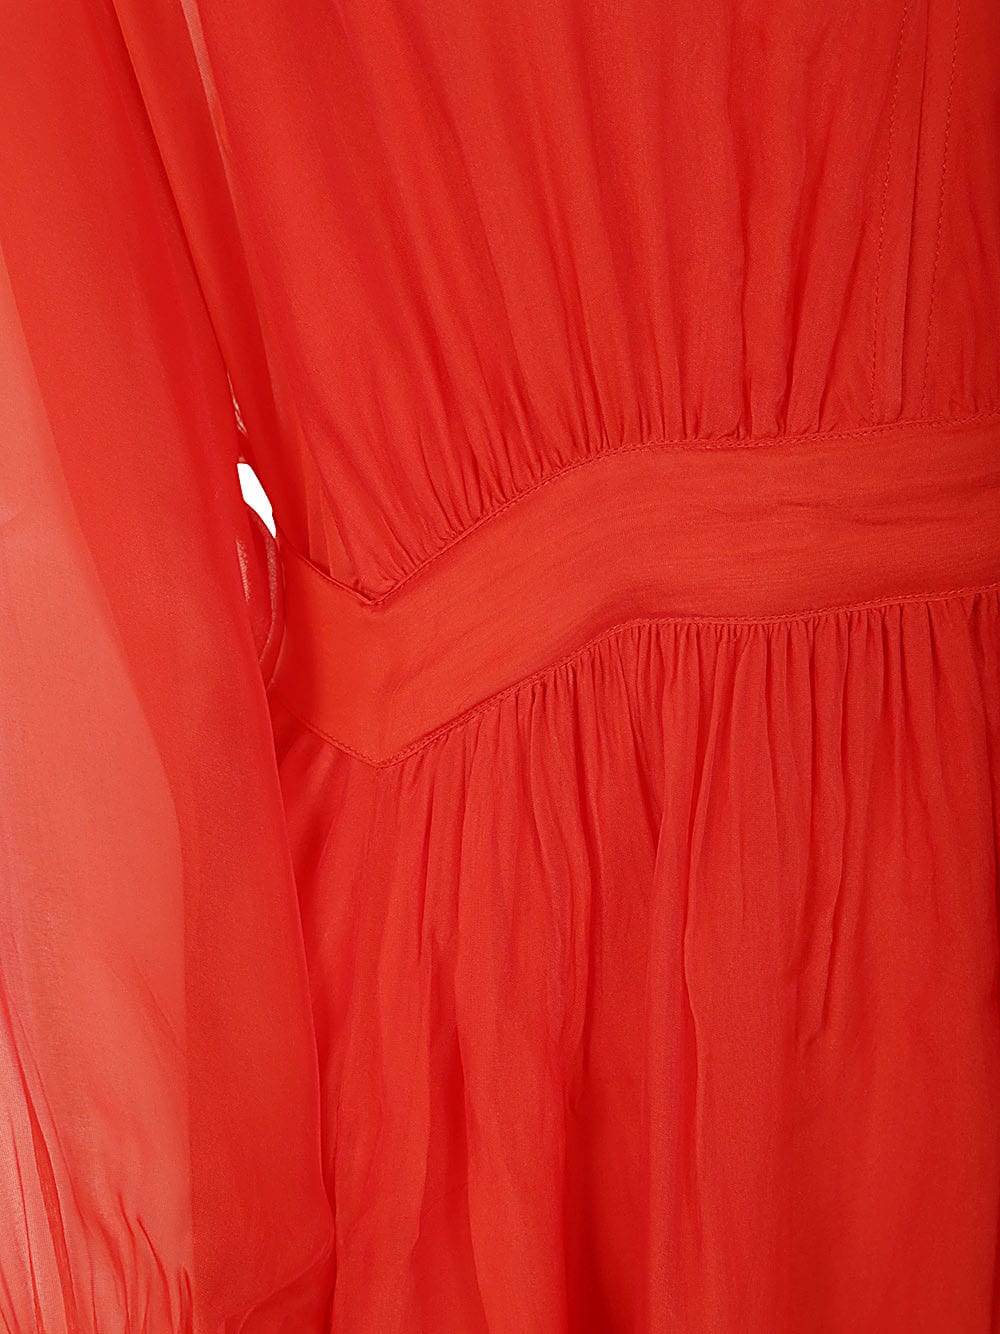 Shop Seventy Long Dress In Red